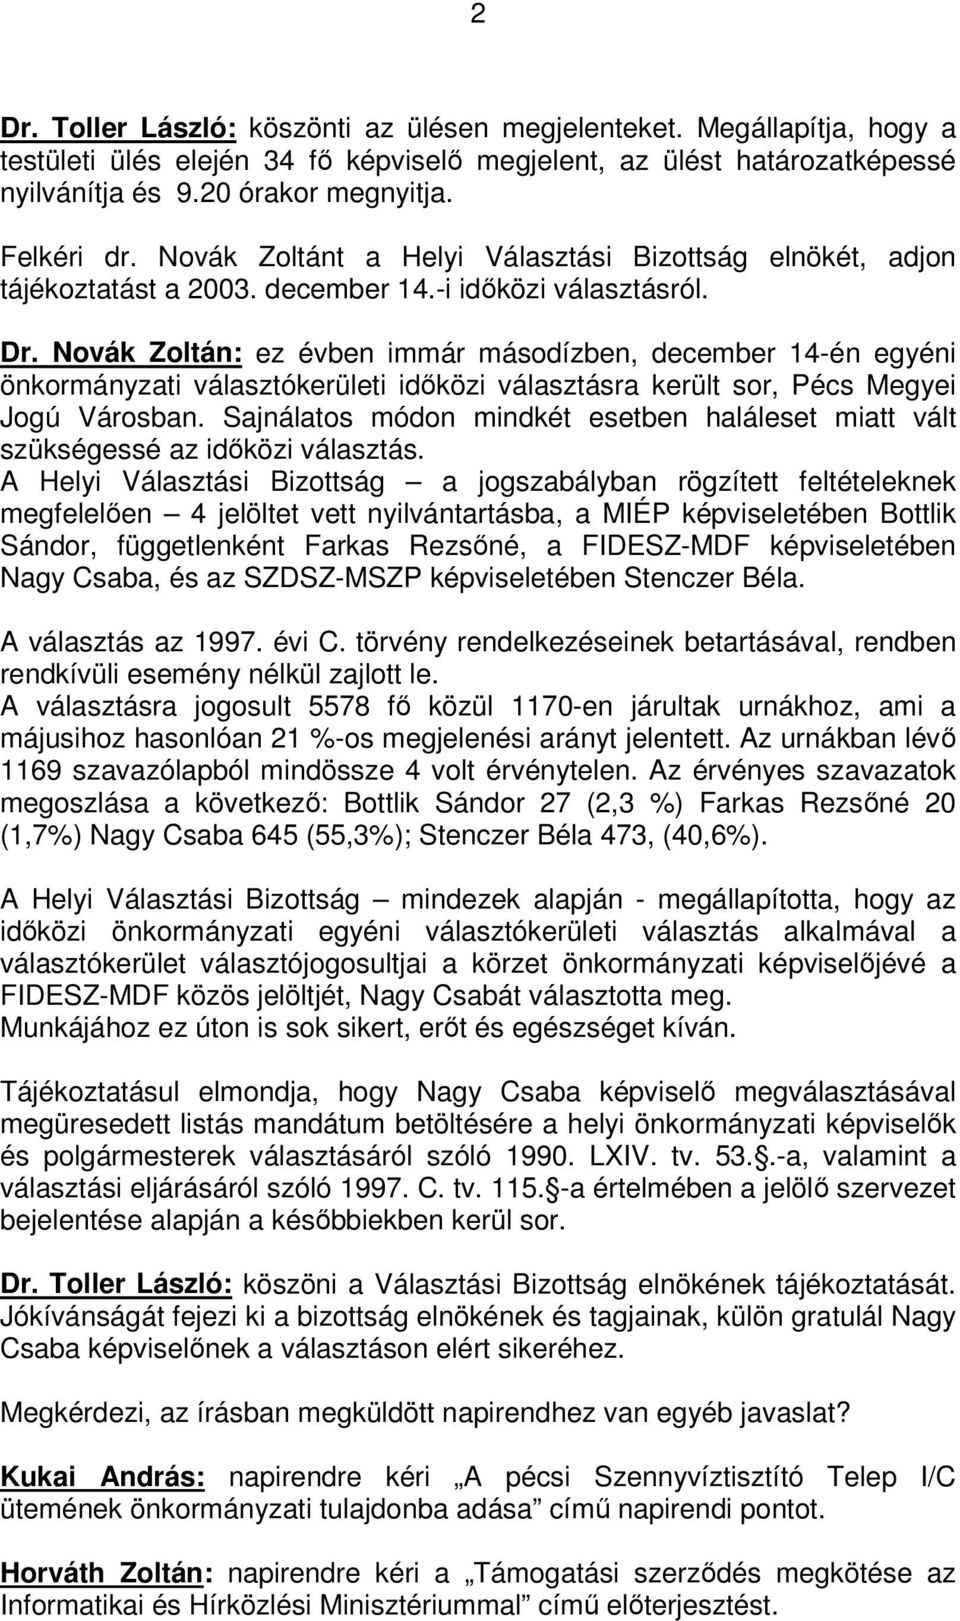 Novák Zoltán: ez évben immár másodízben, december 14-én egyéni önkormányzati választókerületi időközi választásra került sor, Pécs Megyei Jogú Városban.